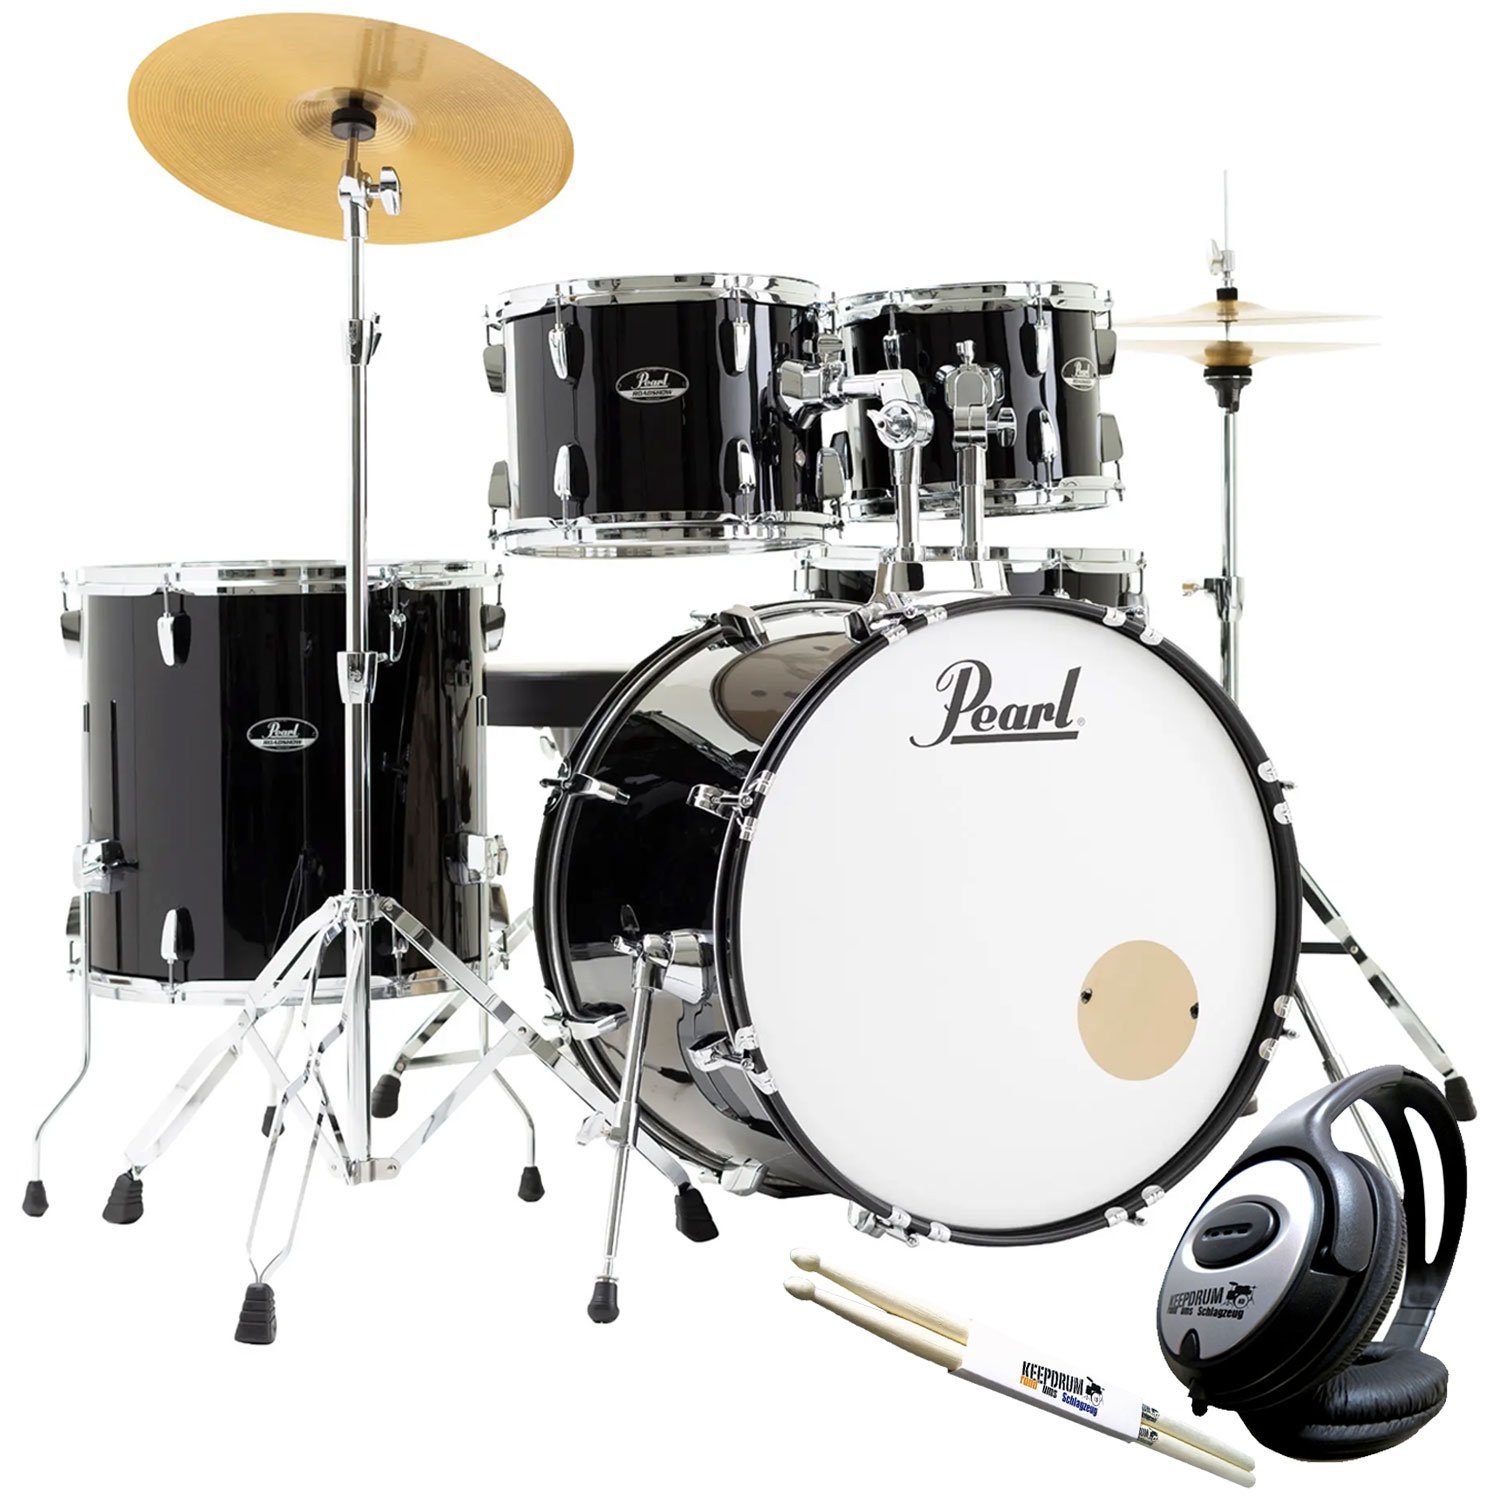 Pearl Drums Schlagzeug Roadshow 22 mit Kopfhörer und Sticks